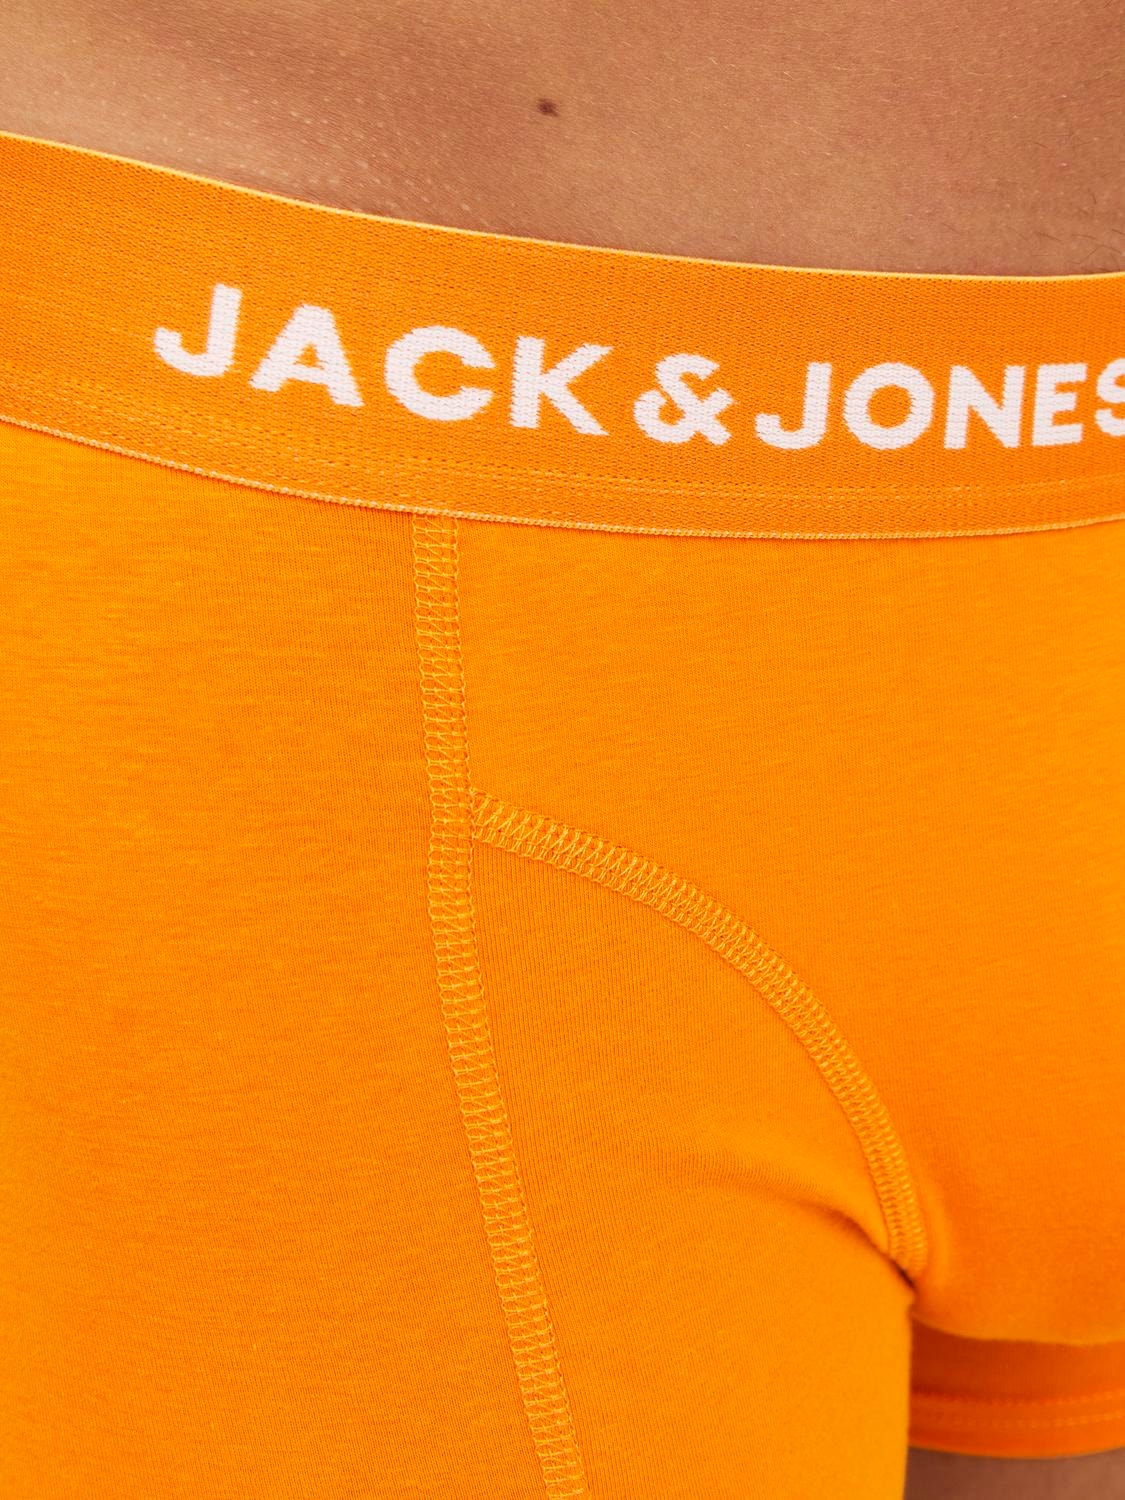 Jack & Jones Pack de 3 Boxers -Dark Green - 12250206